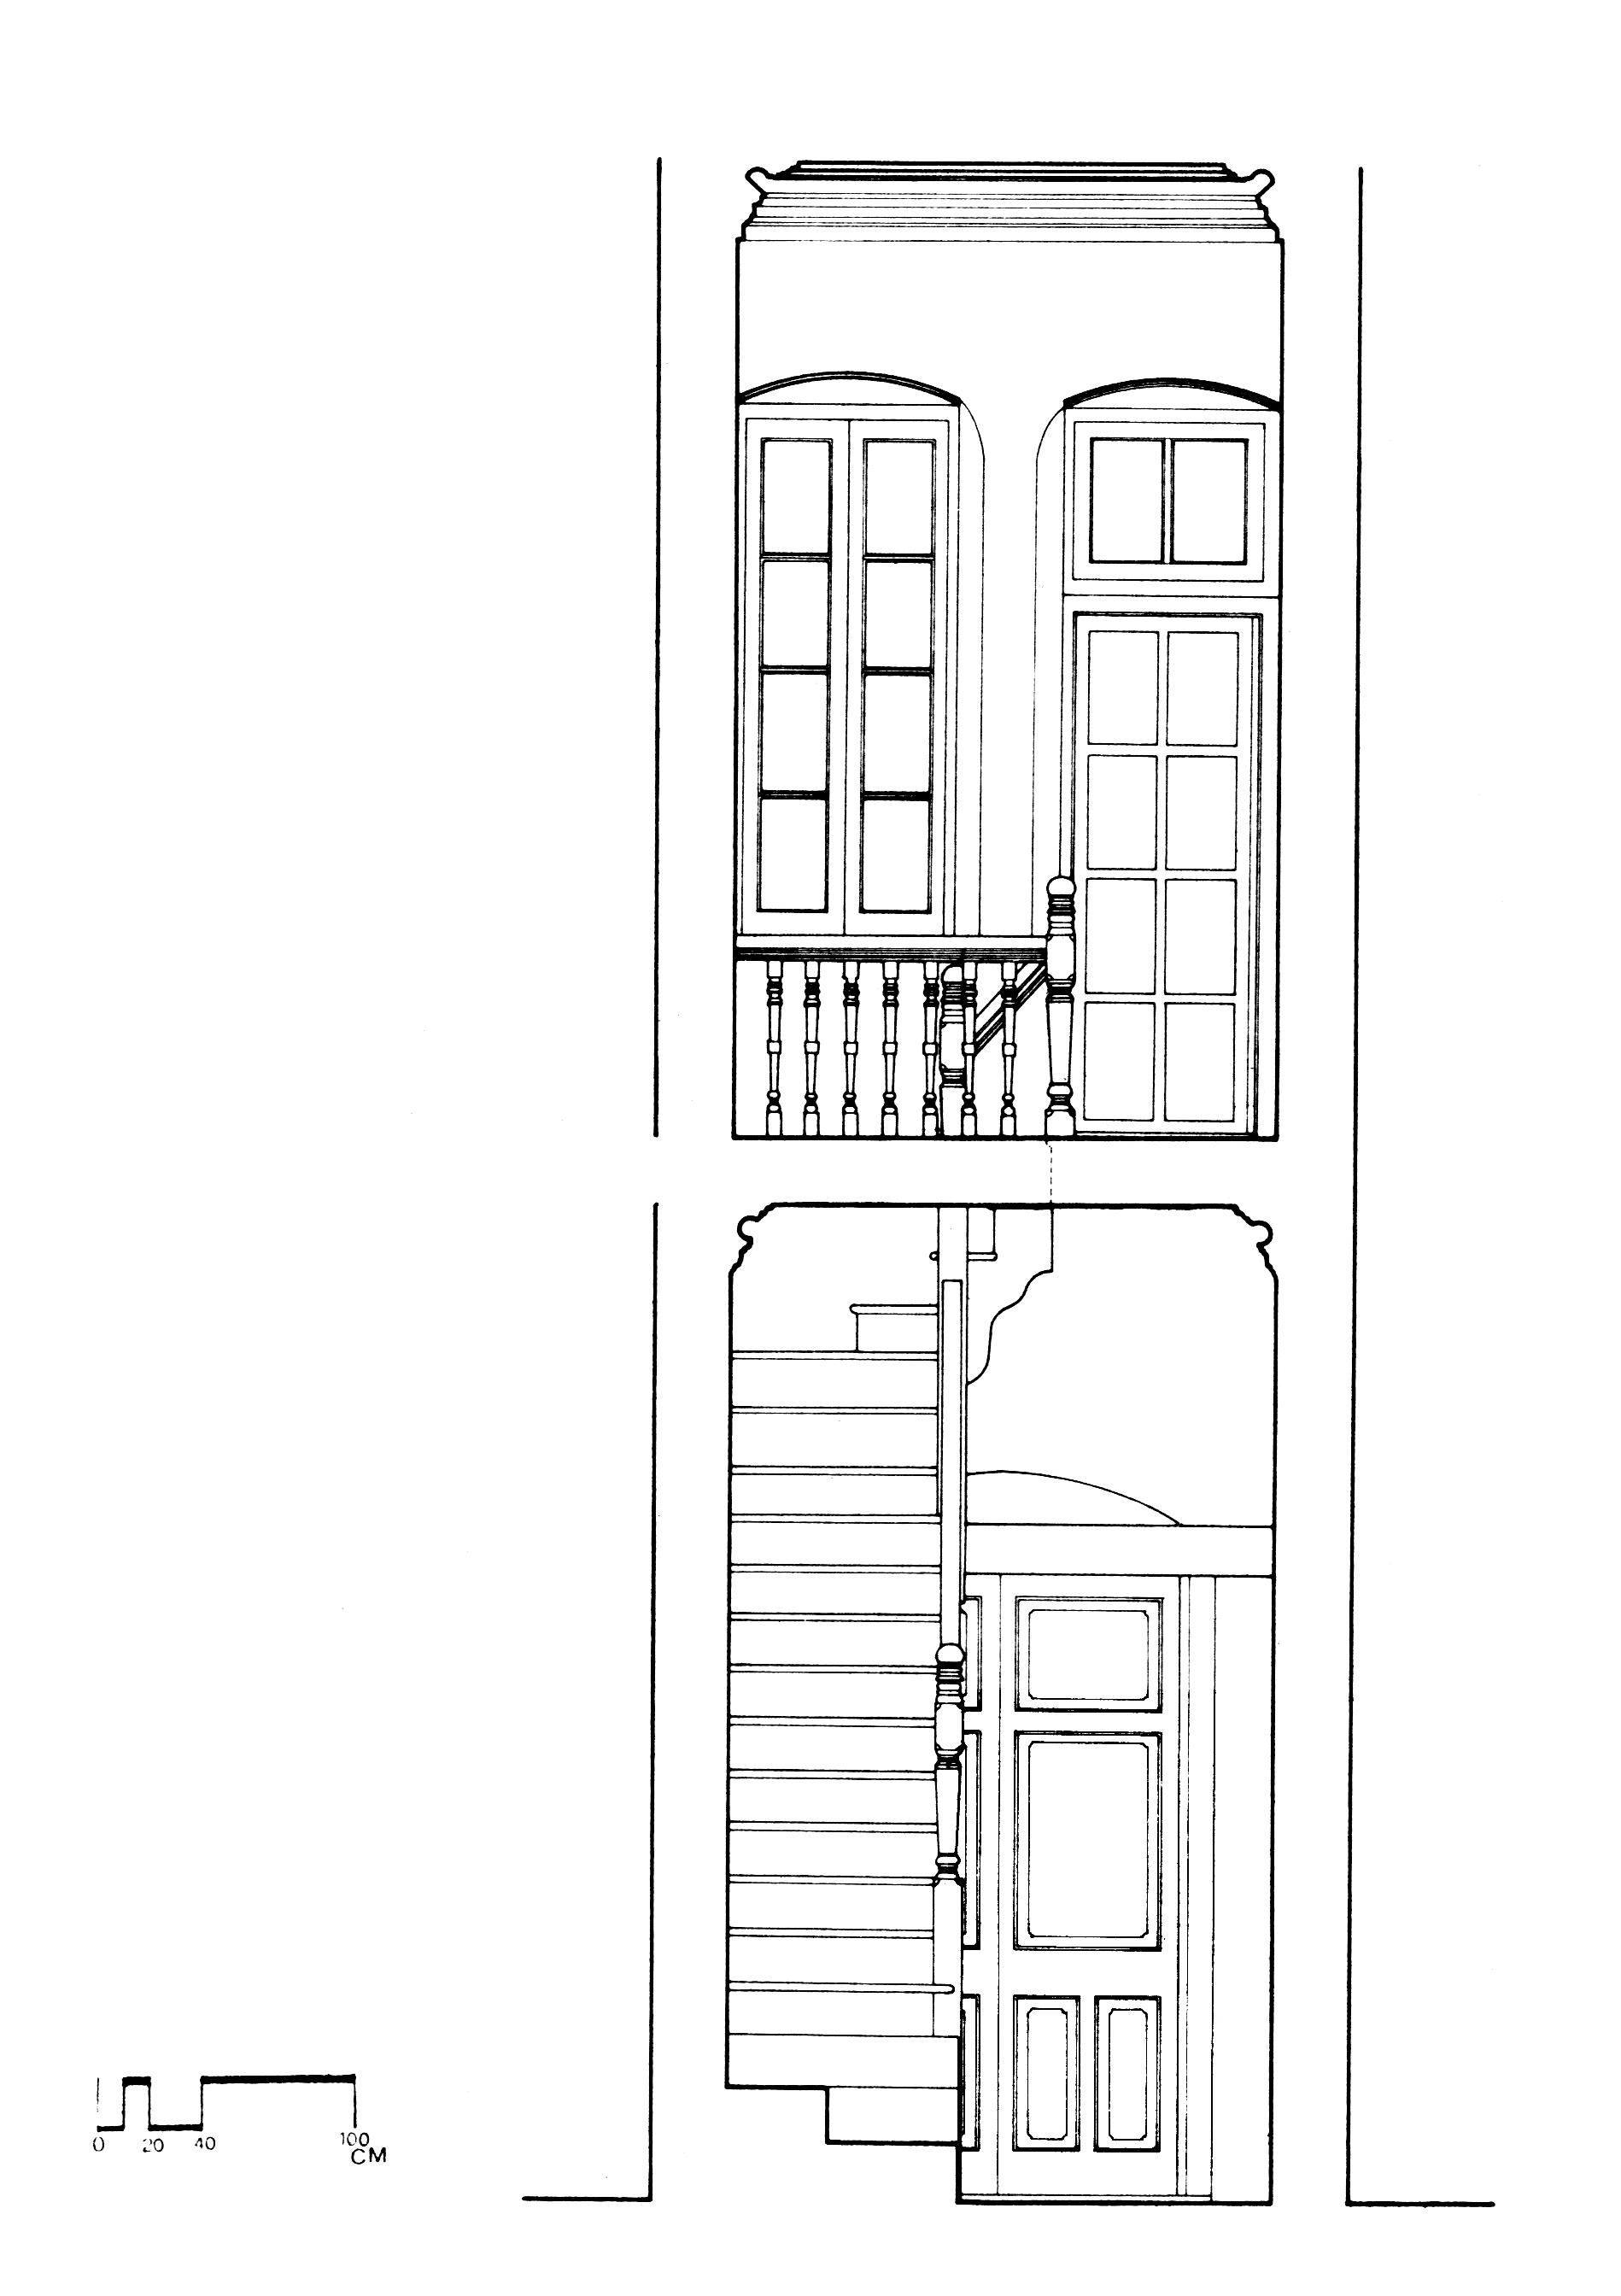 紅毛城圖片檔:英領事住宅次樓梯橫向剖面圖